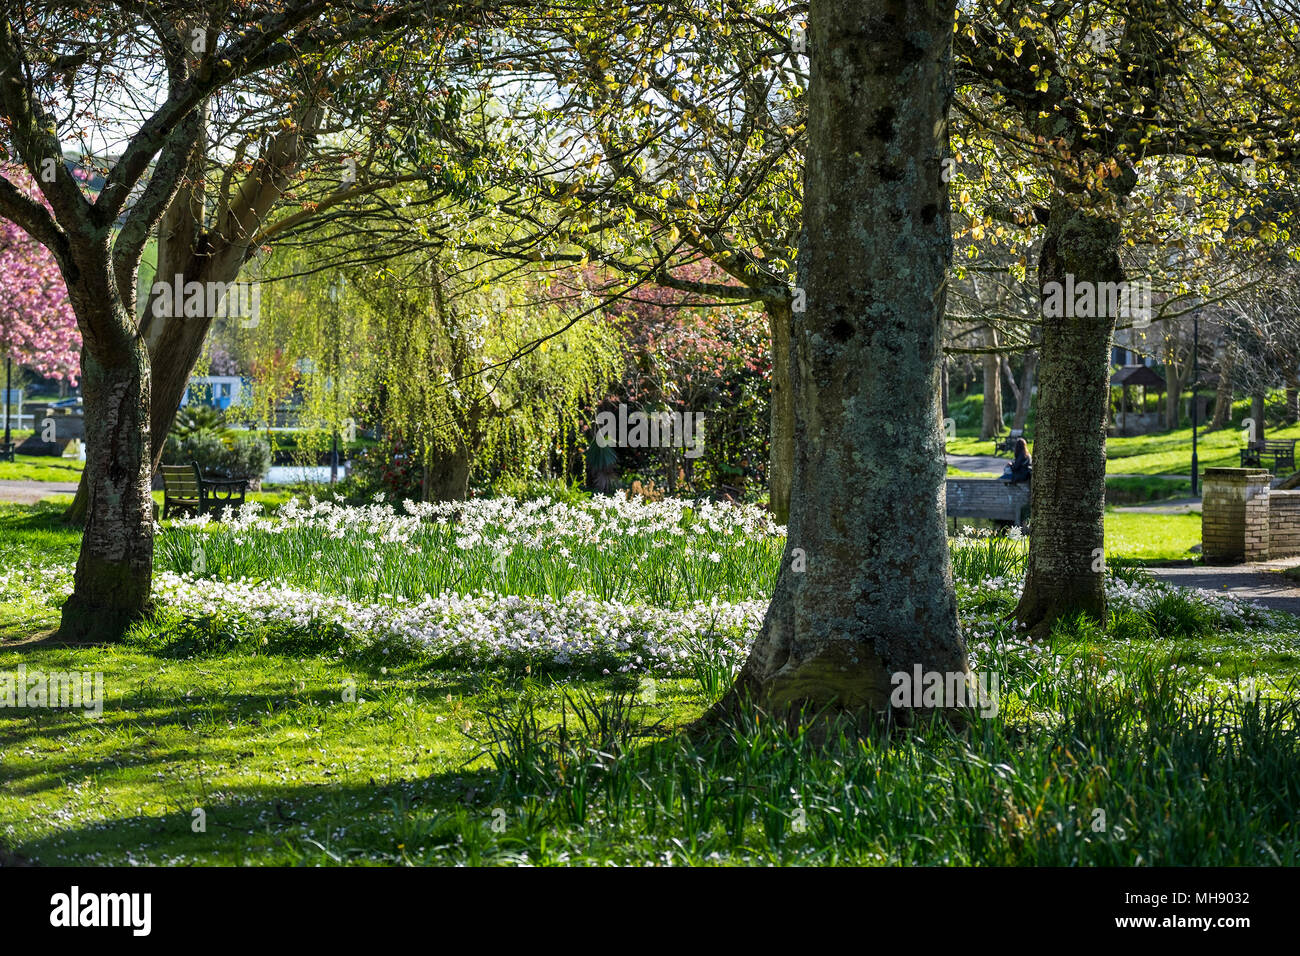 Narziss und Anenome Blumen blühen in einem Park. Stockfoto